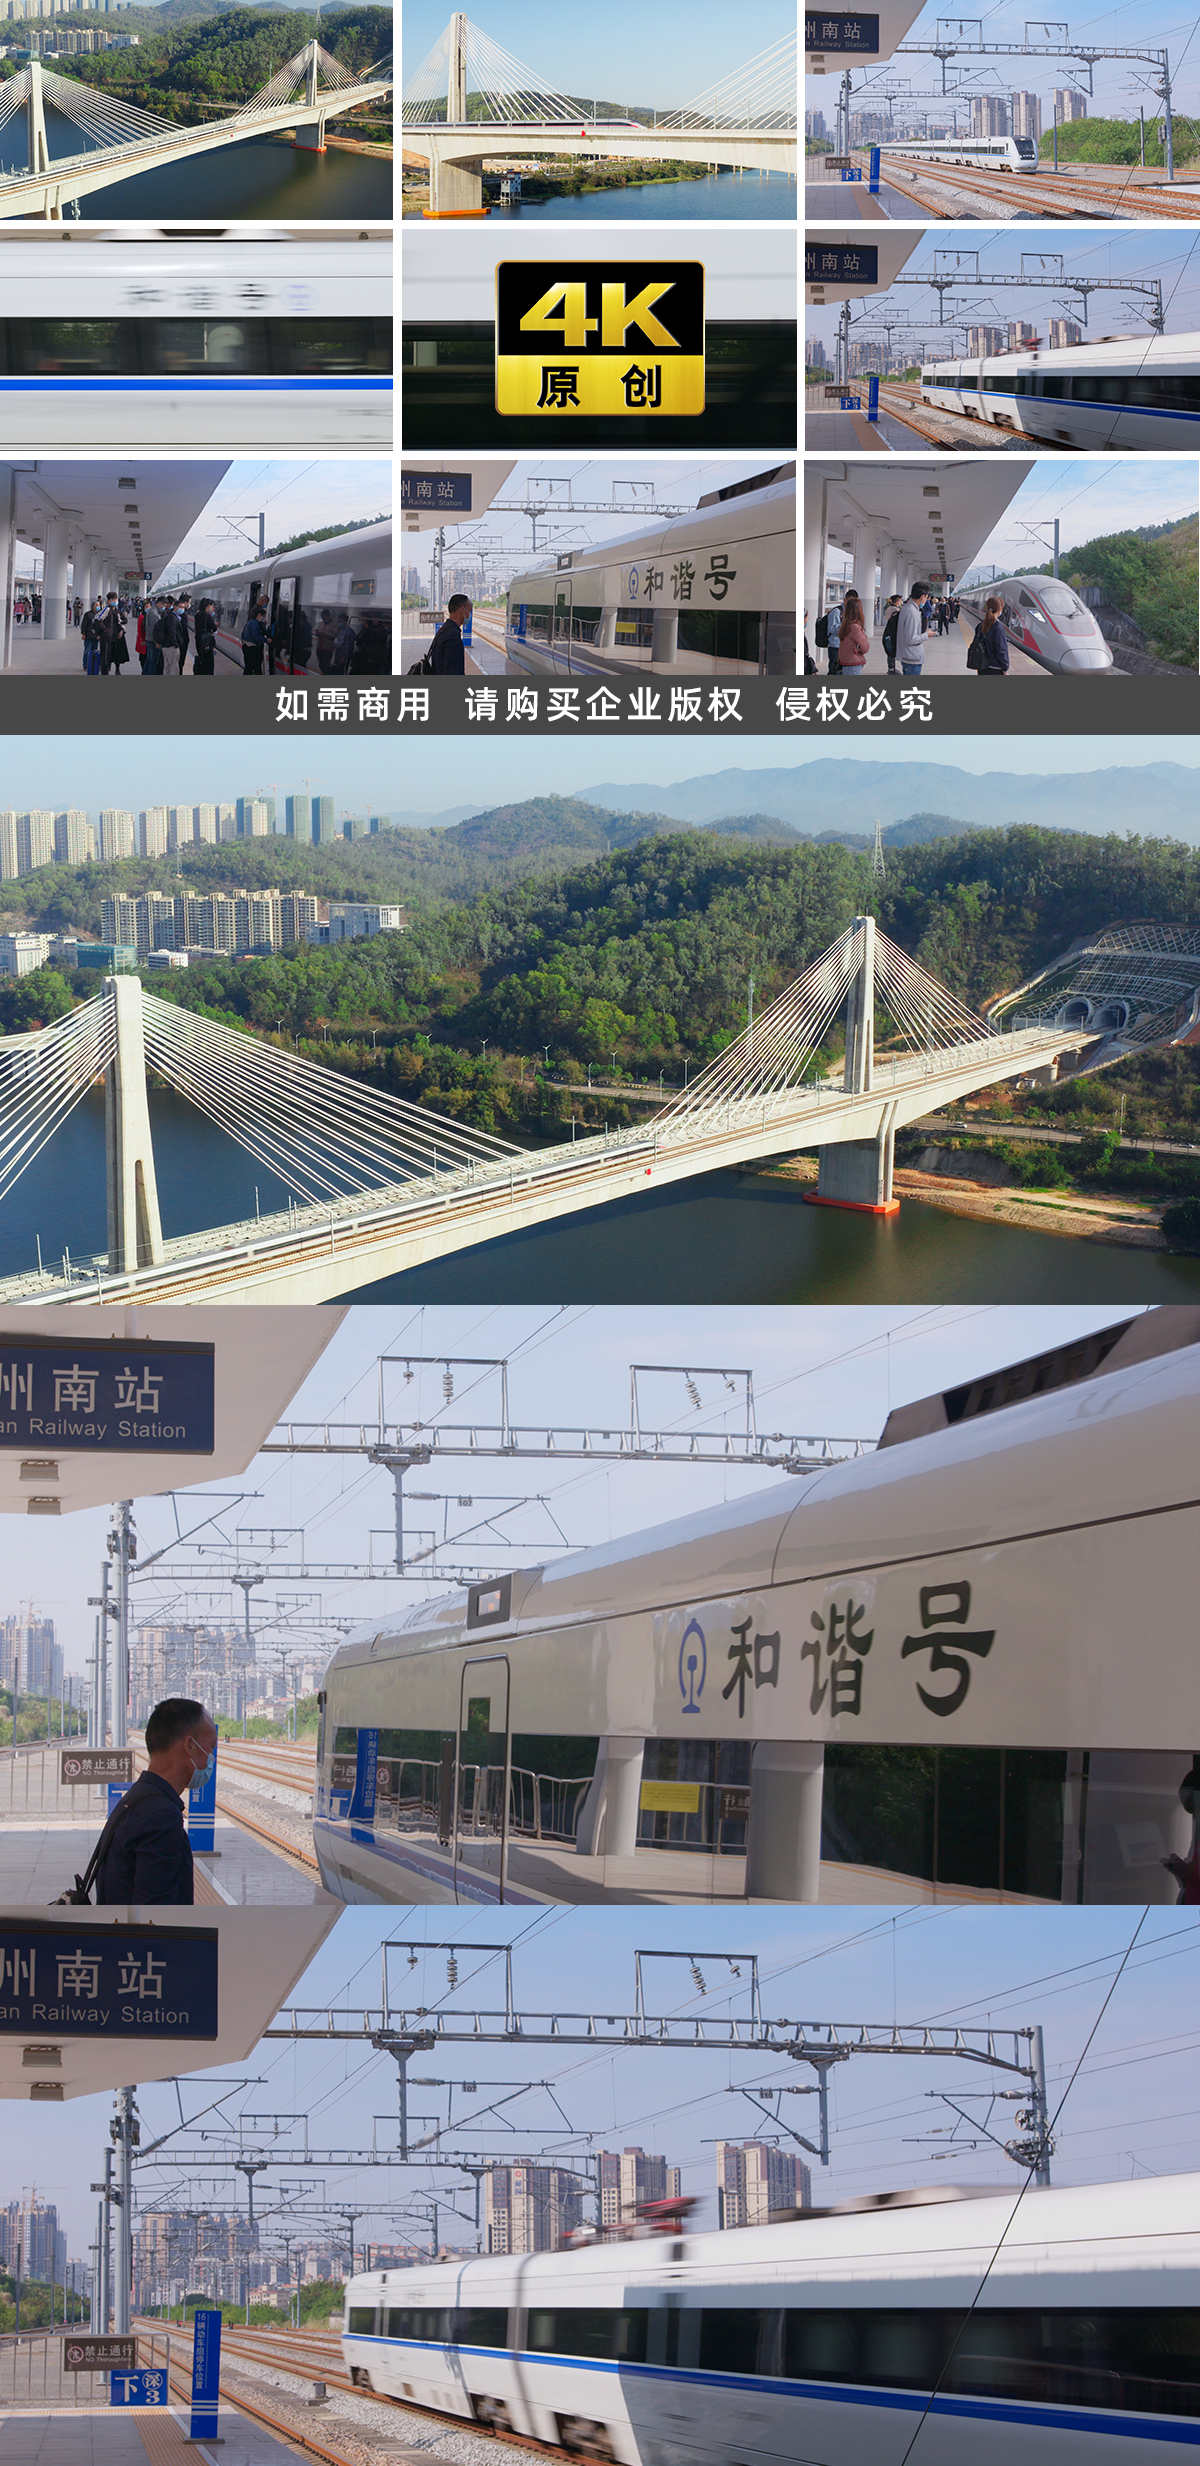 多组中国高铁镜头，动车穿过大桥，和谐号